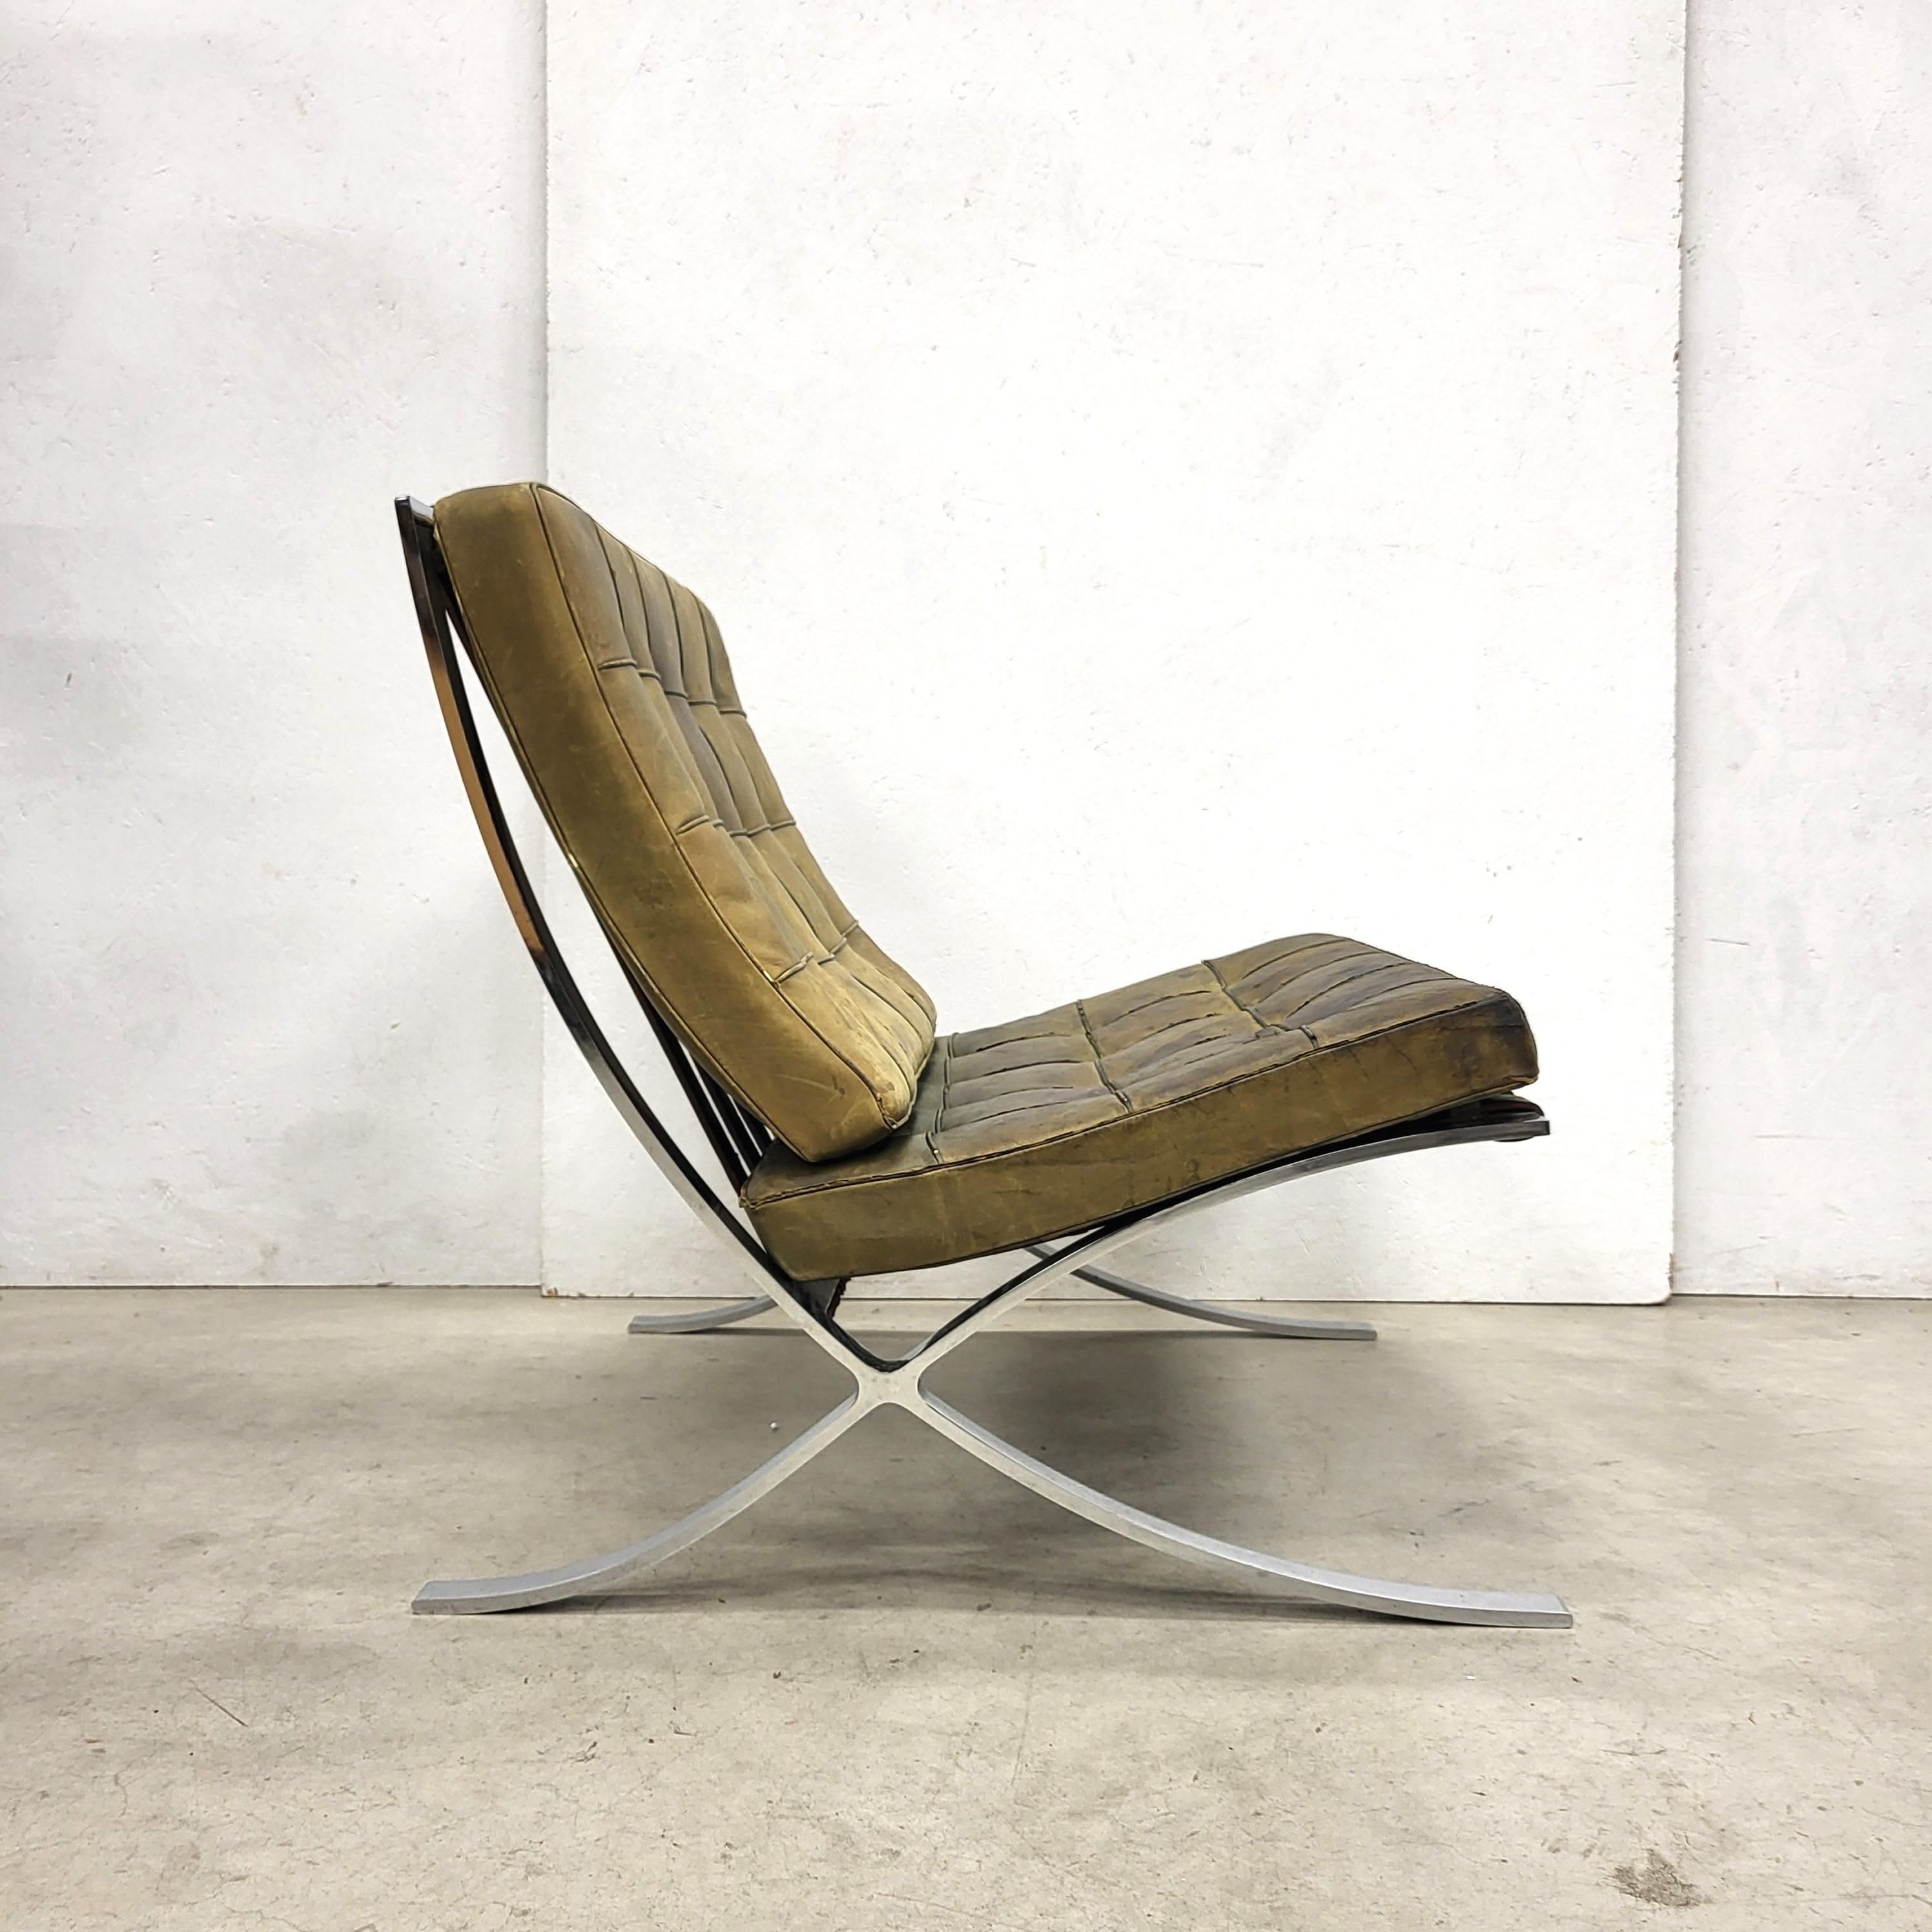 Dieser seltene Barcelona-Stuhl wurde 1929 von Mies van der Rohe entworfen und in den 1970er Jahren von Knoll International hergestellt. 

Das Stück zeichnet sich durch einen handgefärbten olivgrünen Lederbezug auf einem verchromten Stahlgestell aus.